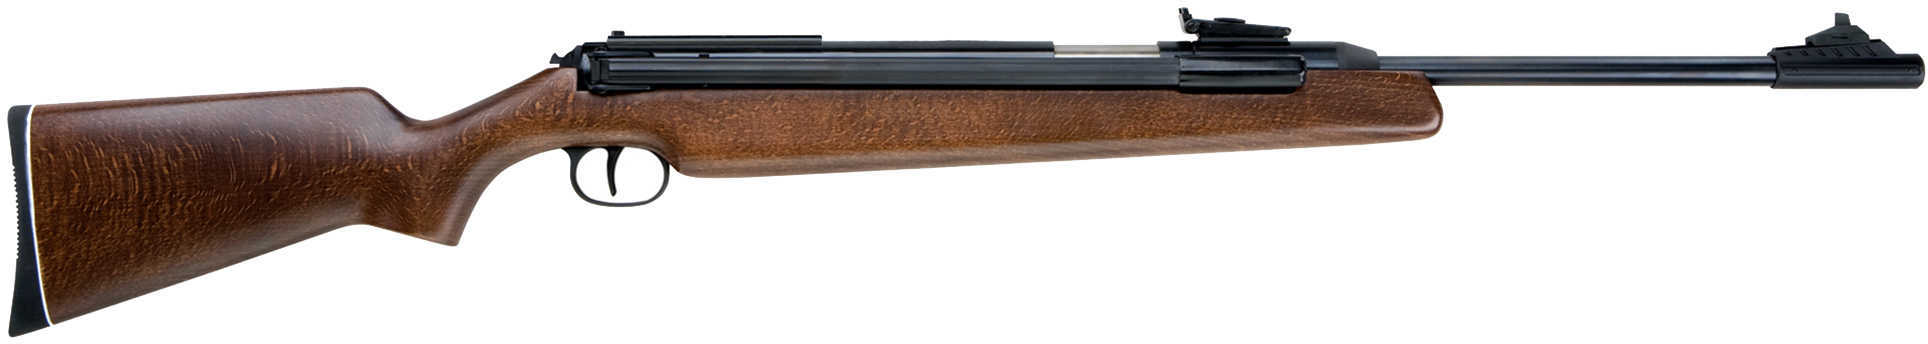 RWS Model 48 Air Rifle .22